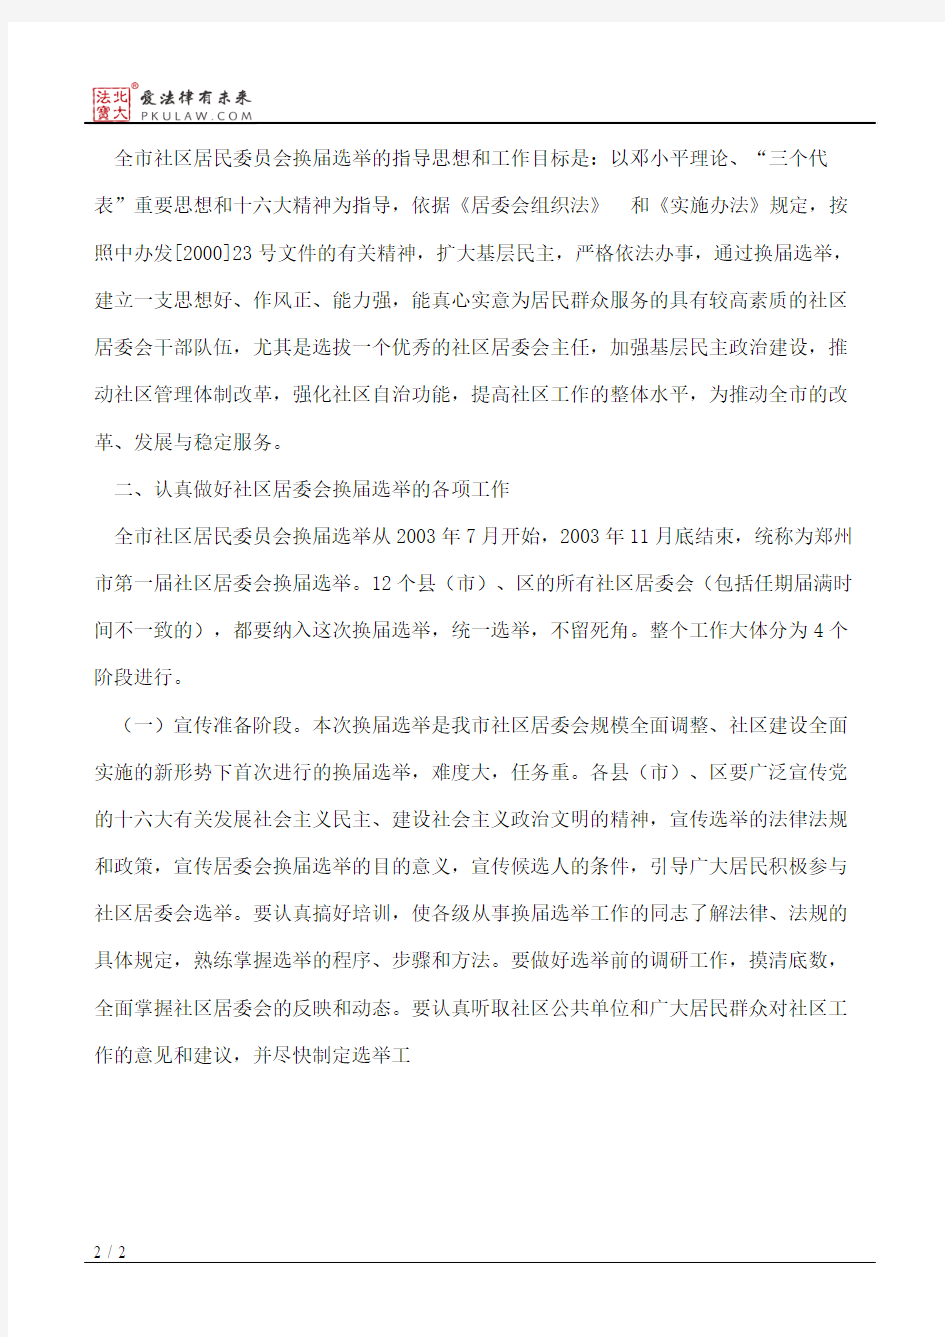 郑州市人民政府关于认真做好全市社区居民委员会换届选举工作的通知